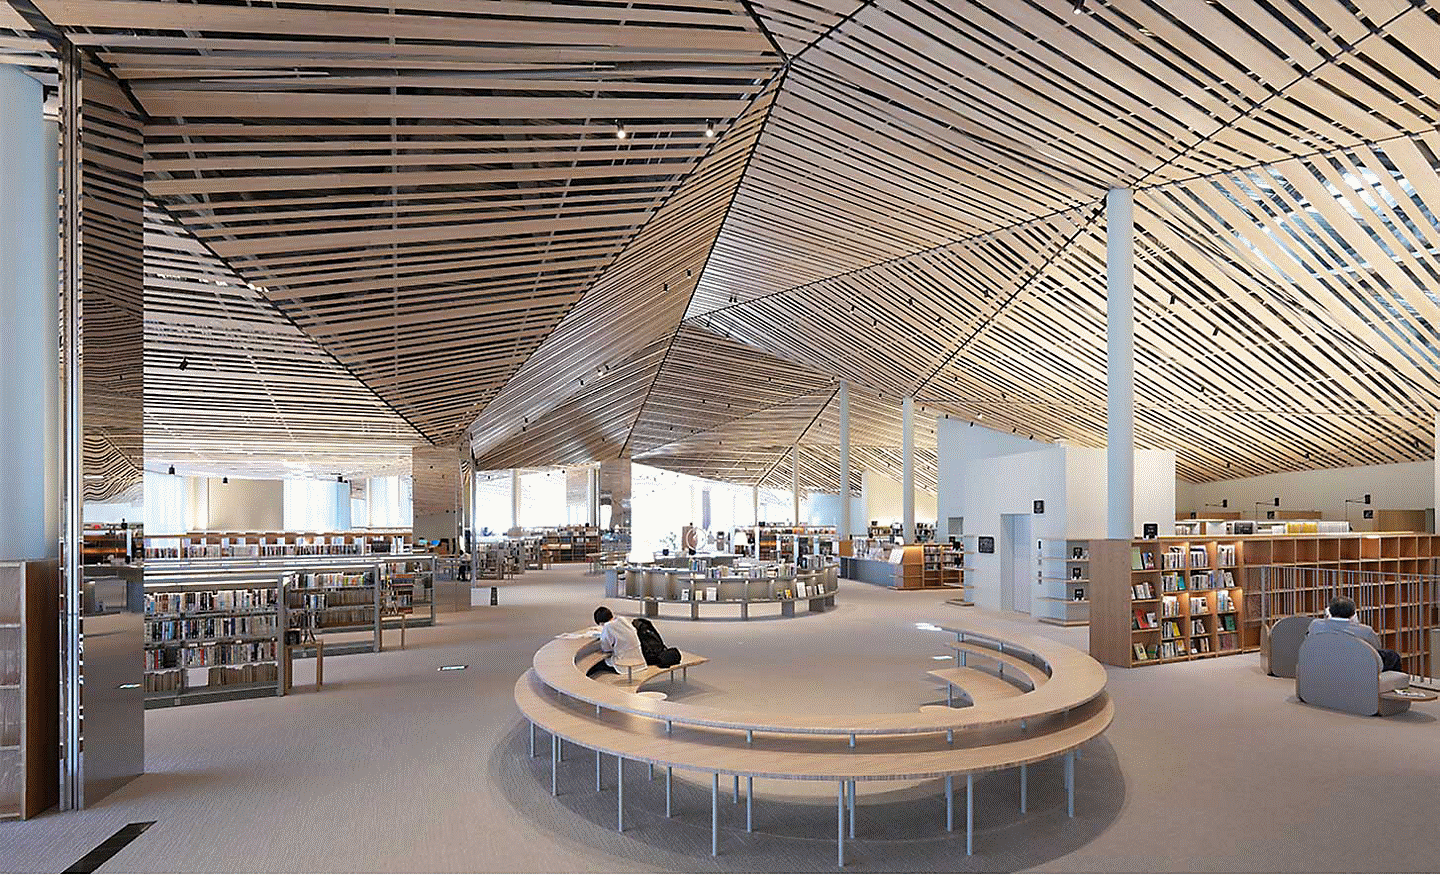 Slika unutarnjeg prostora velike knjižnice kompleksnog dizajna s mnogo ravnih drvenih dasaka na stropu uz rezoluciju do svakog kuta zaslona